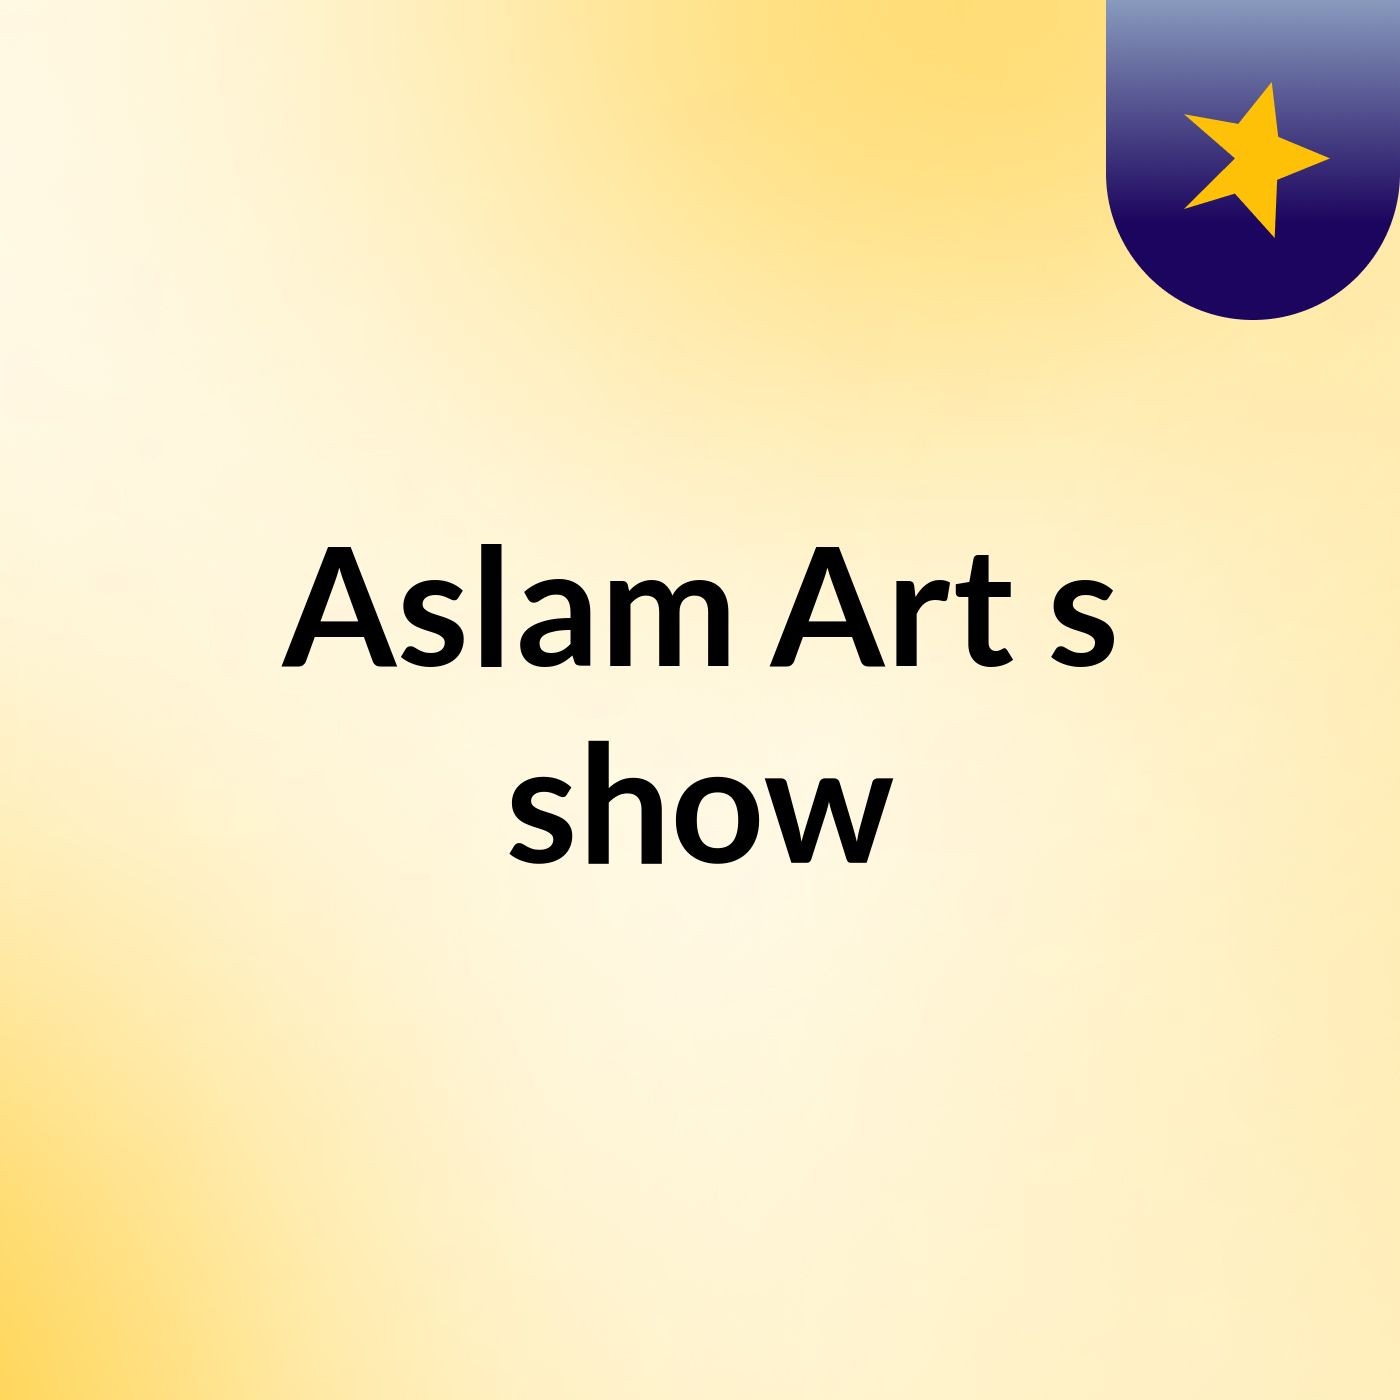 Aslam Art's show